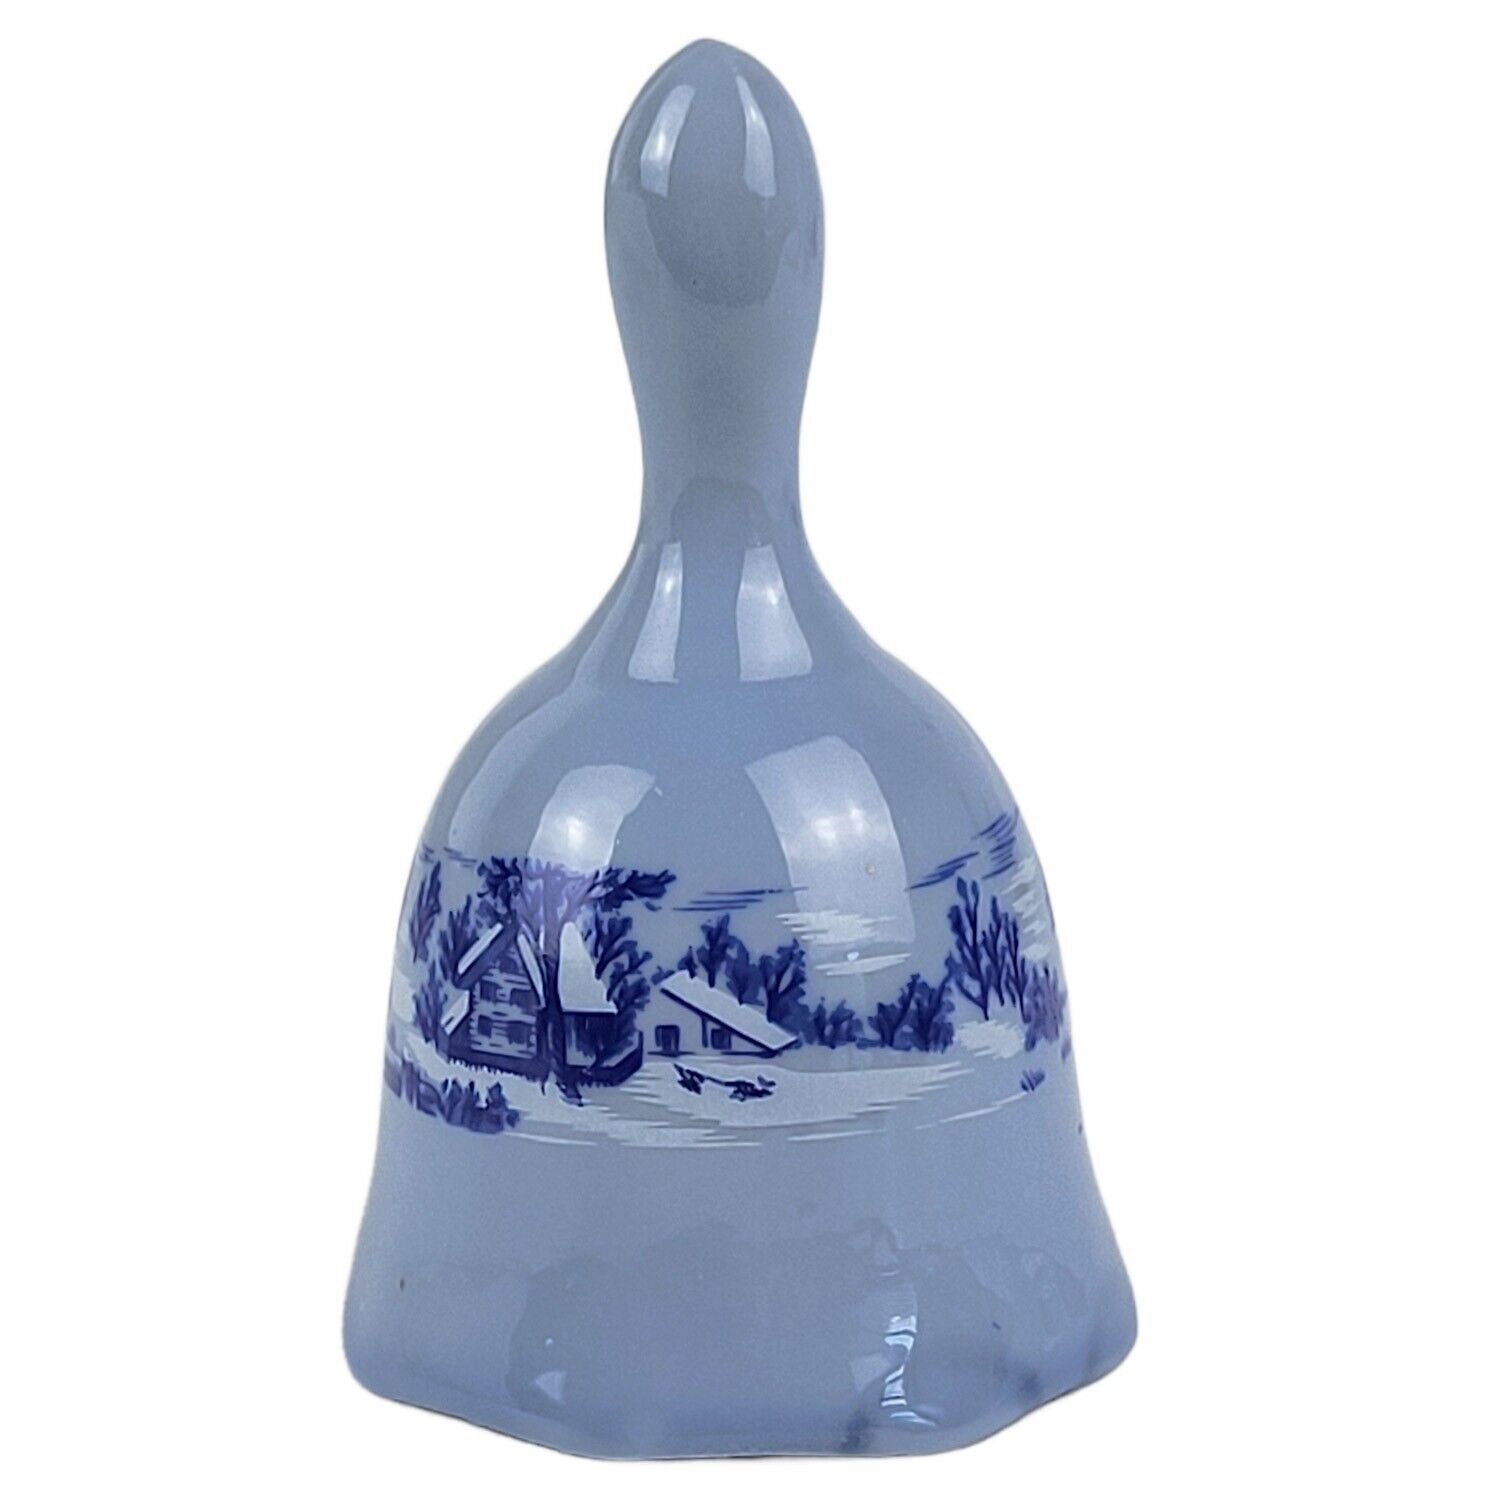 Vintage Miniature Blue Bell, Winter Scene Ceramic or Porcelain